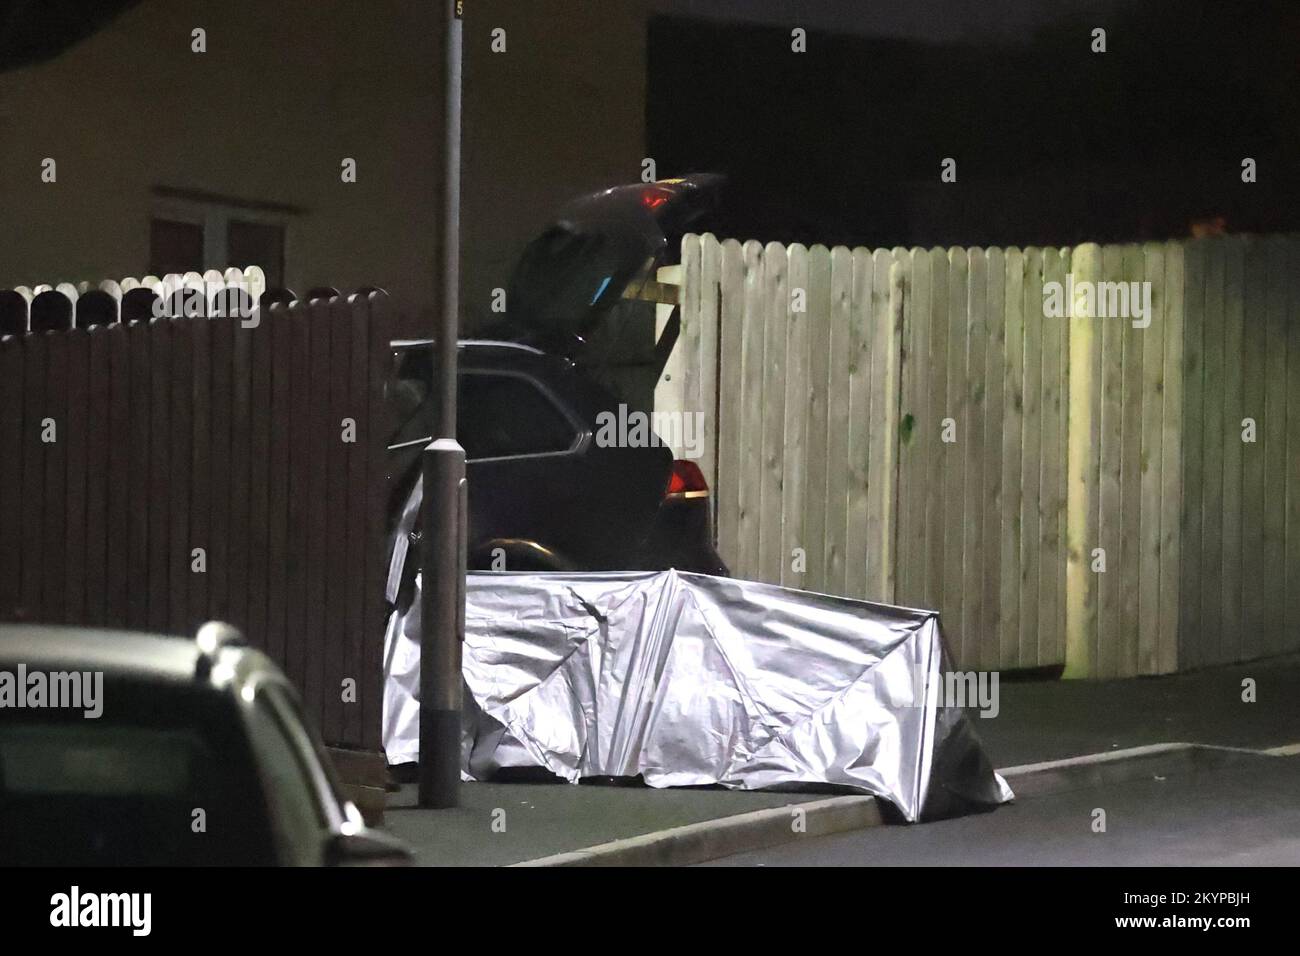 Una tenda accanto ad un'auto sulla scena di un tiro fatale nella zona del Parco Ardcarn di Newry il giovedì sera in cui un uomo è morto. Foto Stock